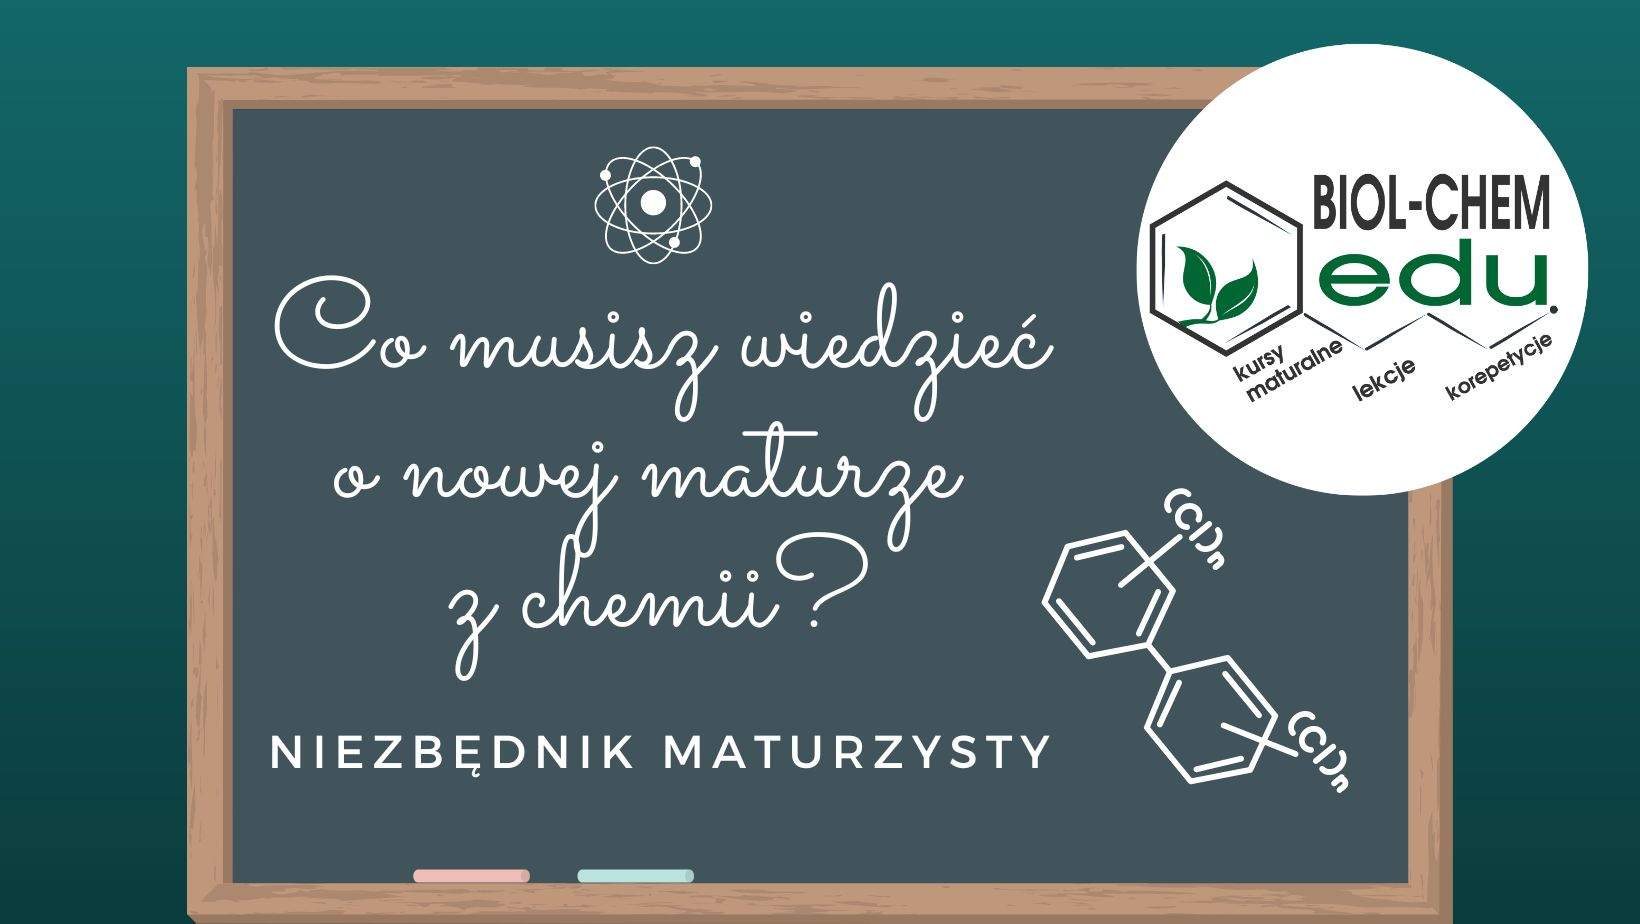 Co musisz wiedzieć o nowej maturze z chemii? Niezbędnik maturzysty.